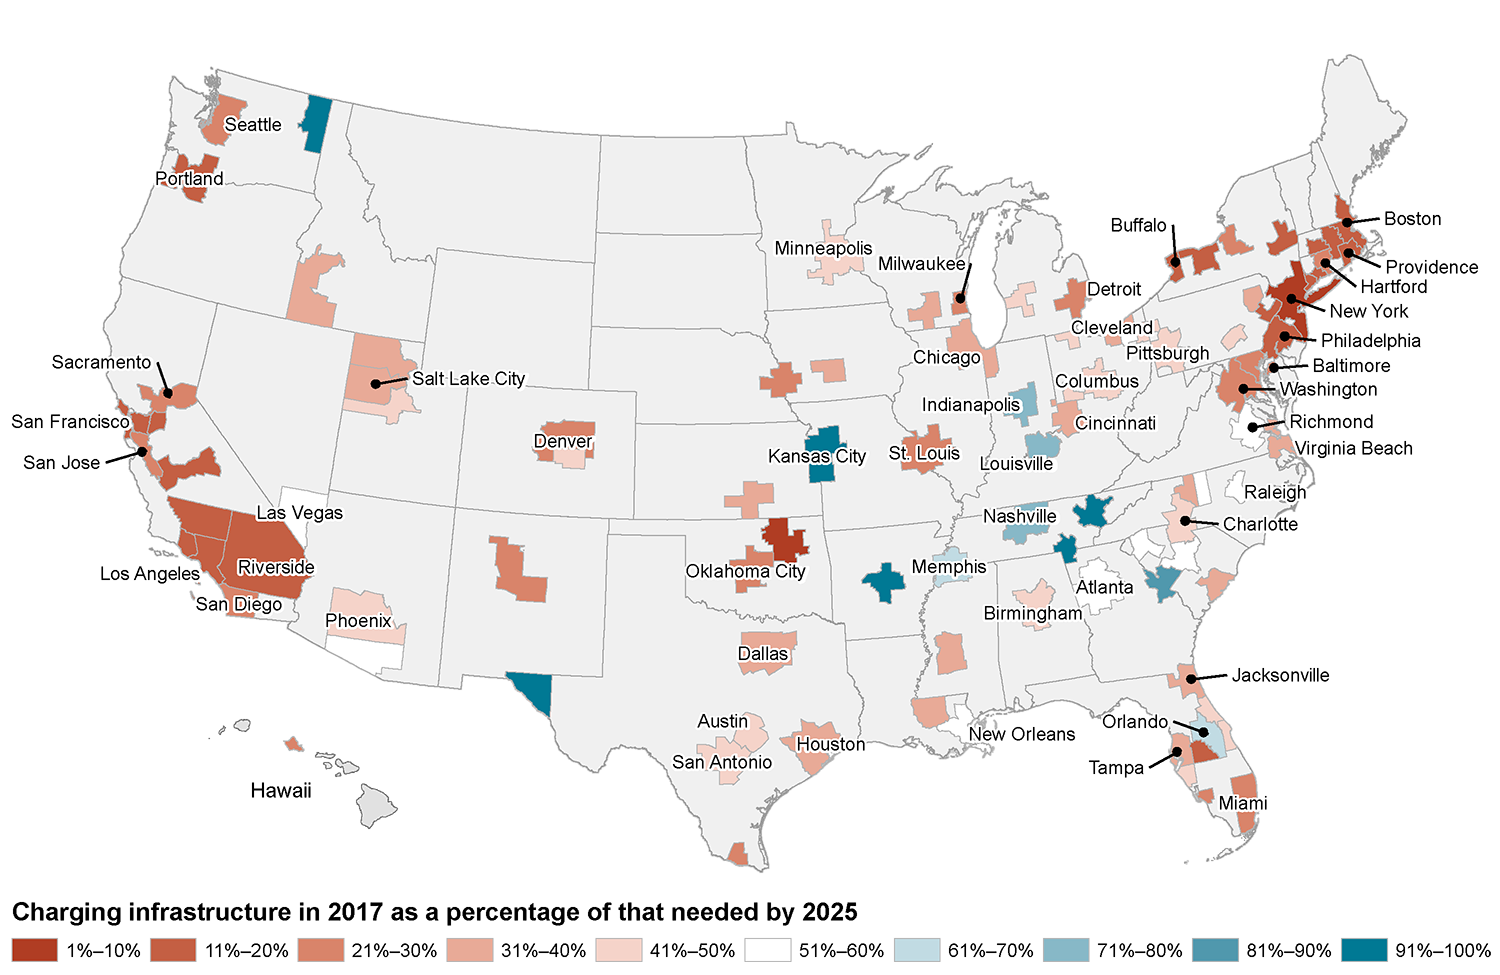 charging infrastructure gap in major US metro areas